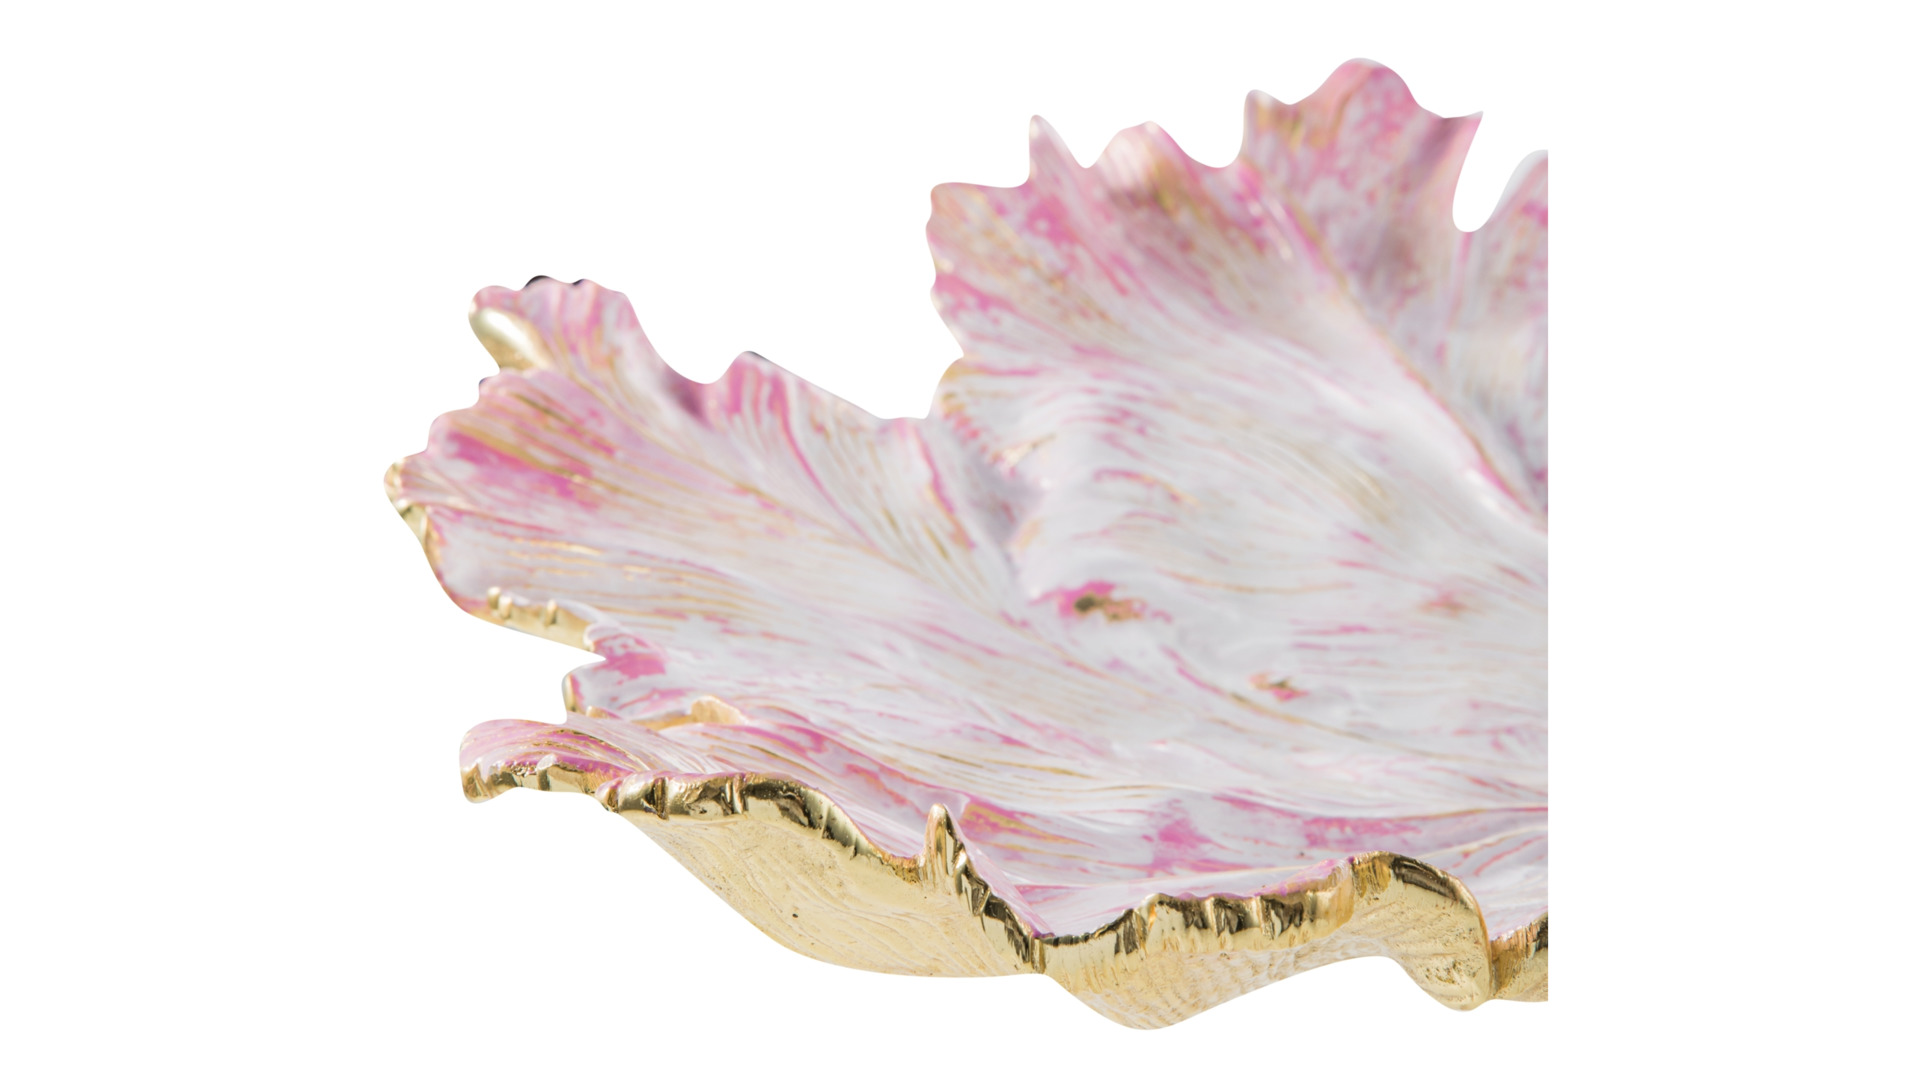 Блюдо-лист Michael Aram Тюльпан 48 см, сталь нержавеющая, розовое